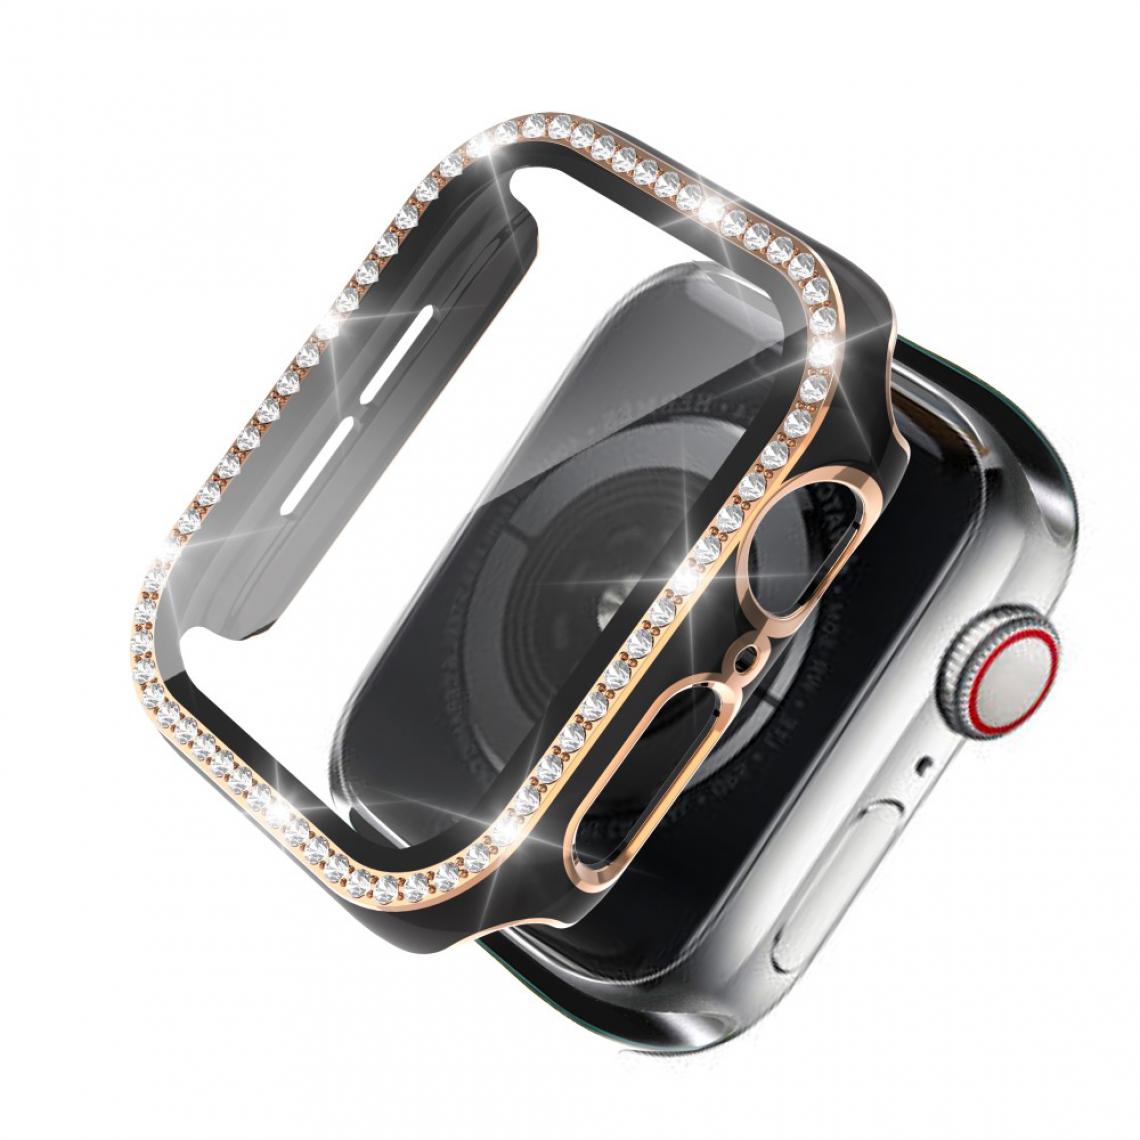 Other - Coque en TPU Cristal de galvanoplastie bicolore noir/or pour votre Apple Watch 1/2/3 38mm - Accessoires bracelet connecté